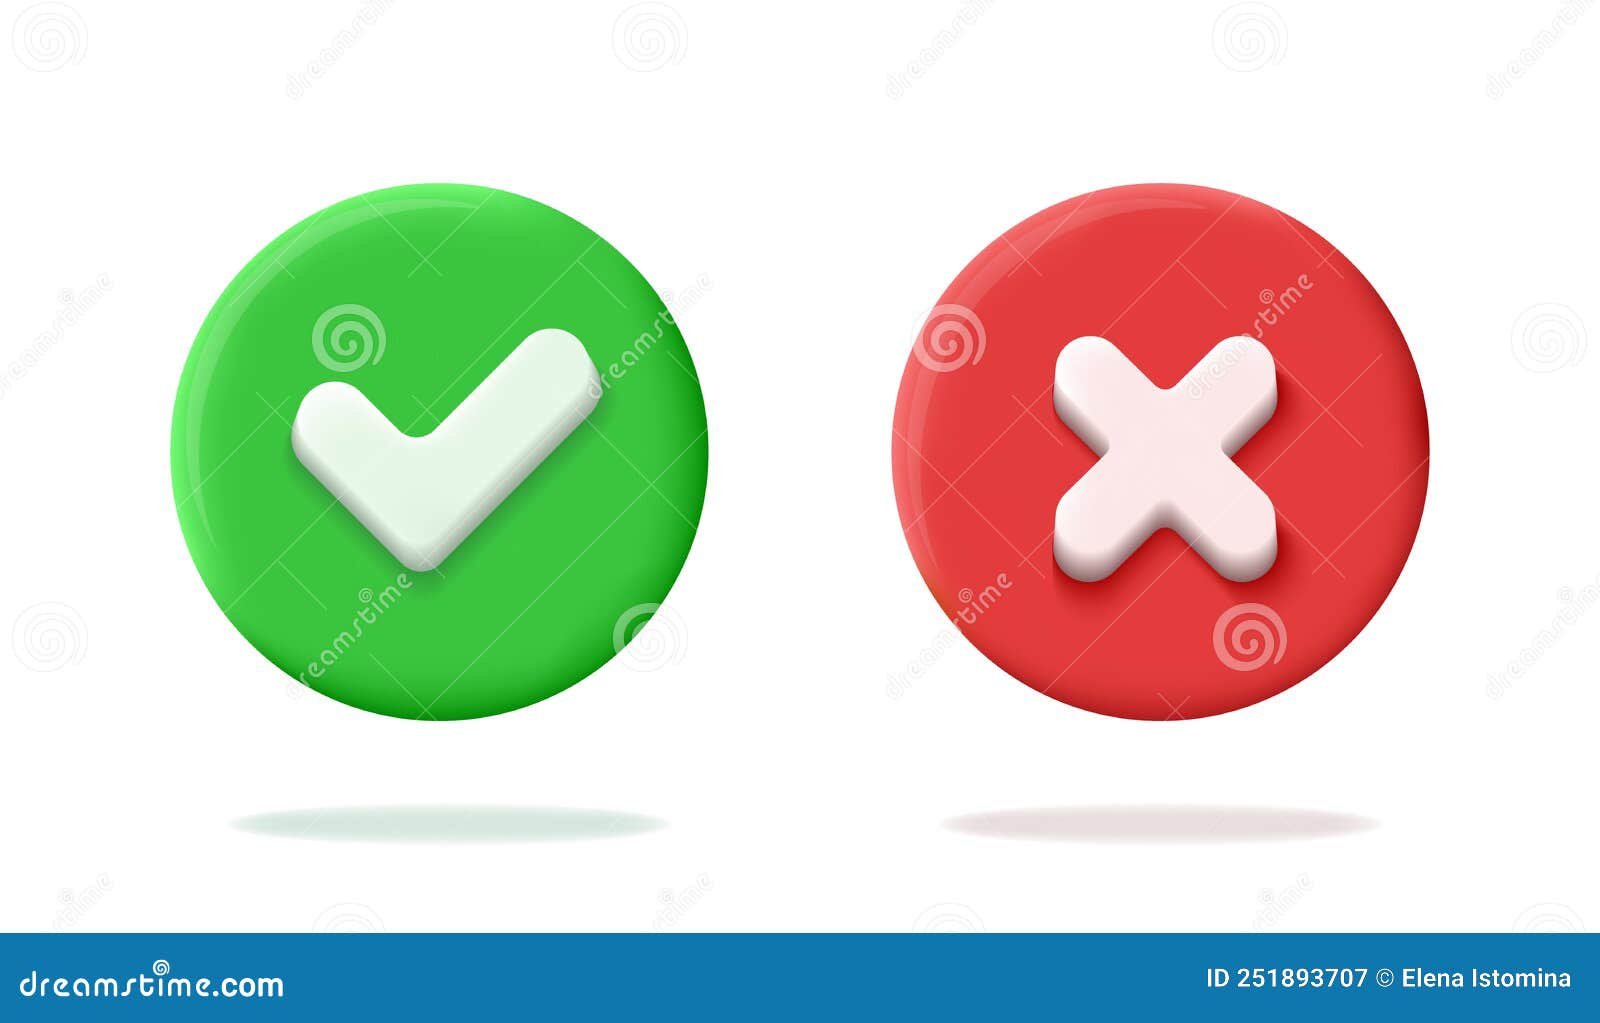 Realistic 3d Green and Red Circle Button - Check and Cross là một bộ ảnh đầy màu sắc với các nút bấm xanh và đỏ chân thực nhất. Đây là một tài nguyên độc đáo và tuyệt vời cho các lập trình viên hay các nhà thiết kế trang web. Hãy xem ngay để cùng trải nghiệm!